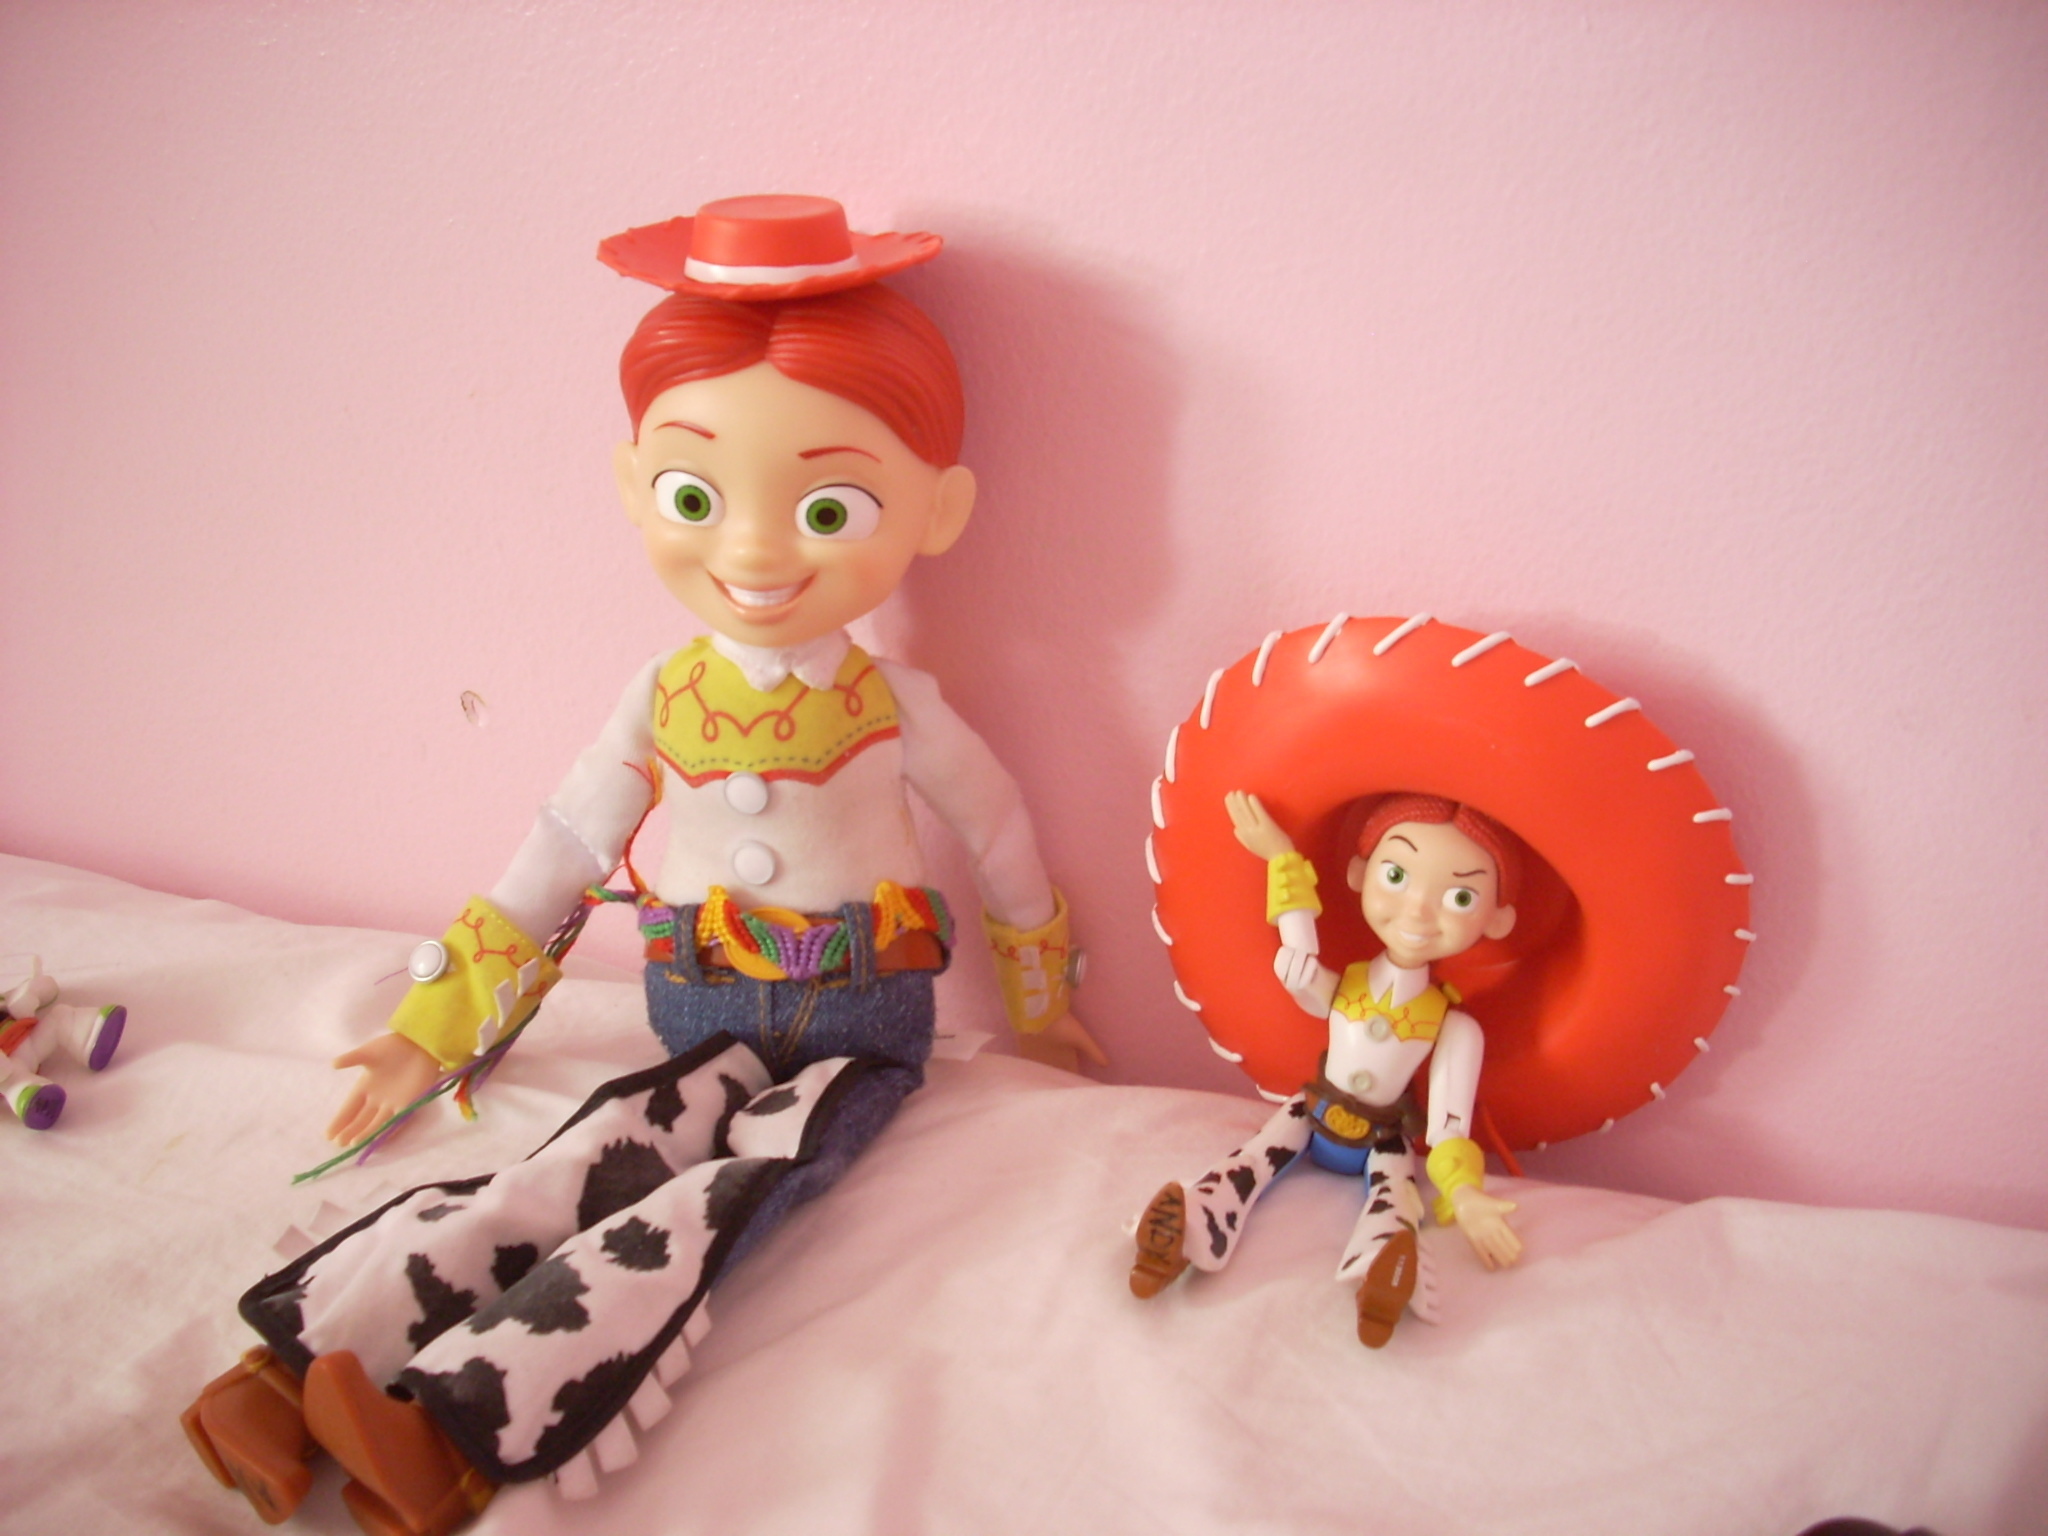 Hat Switch - Jessie (Toy Story) photo (16534107) - fanpop